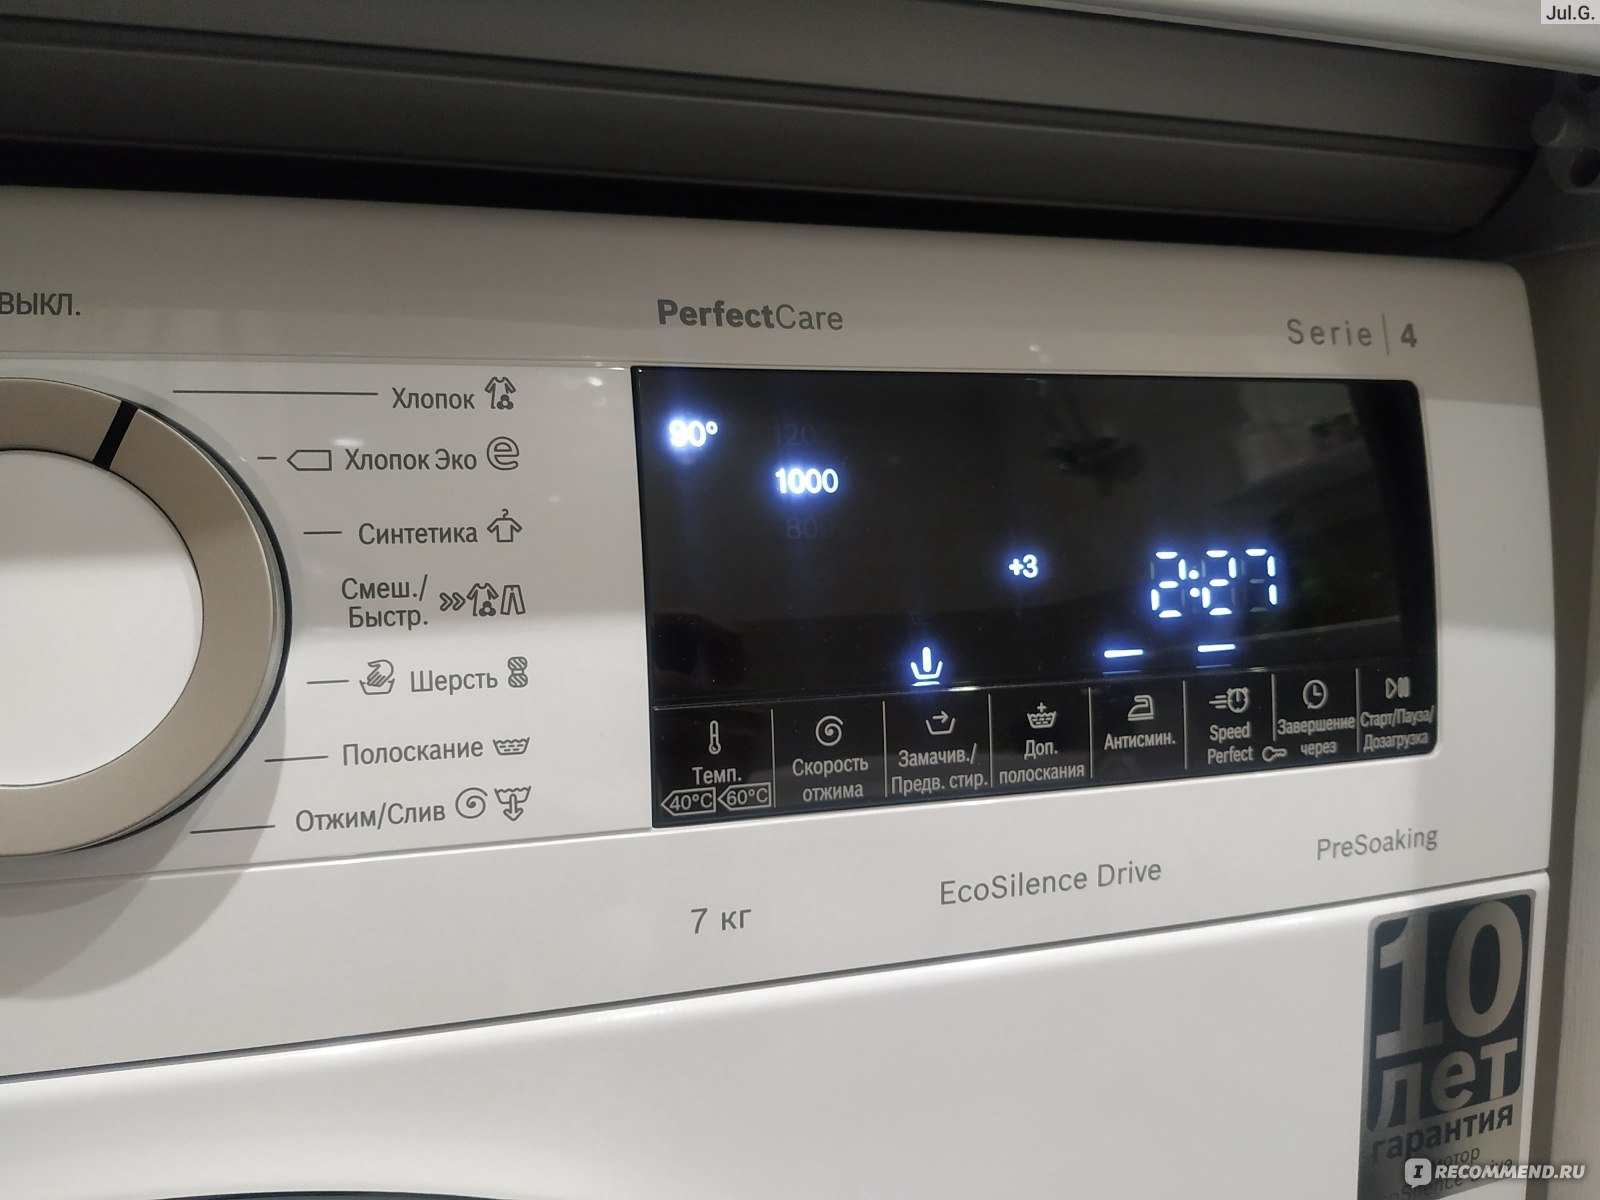 стиральная машина bosch 4 series perfectcare отзывы